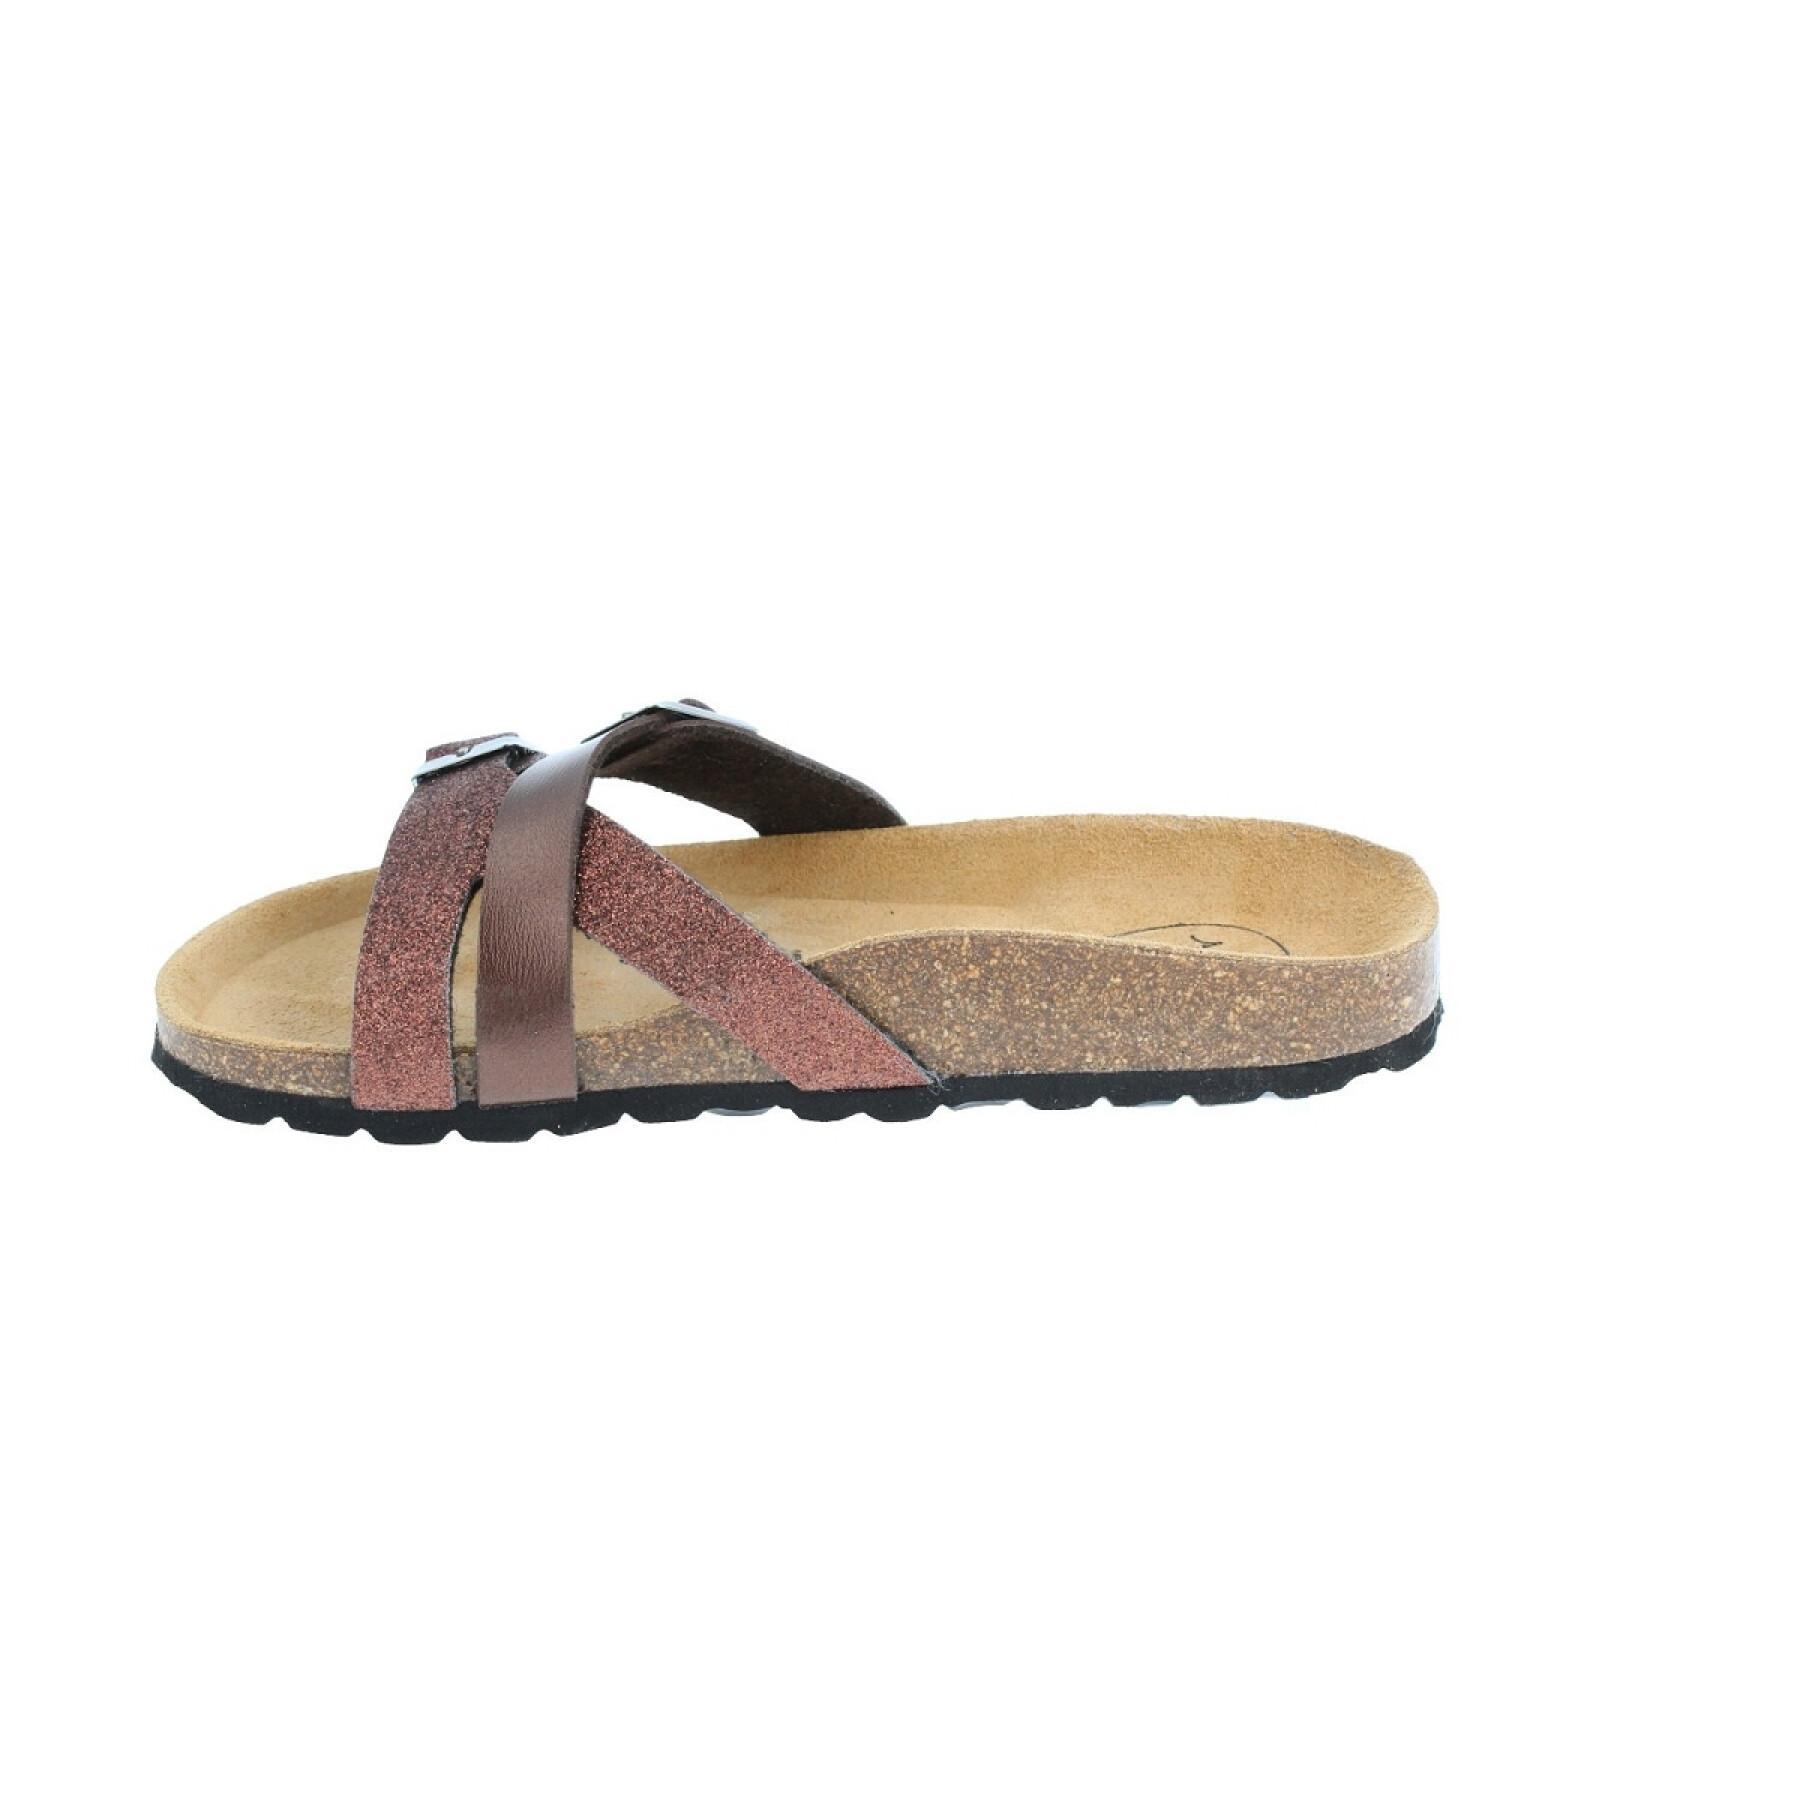 Women's sandals Amoa Bignan